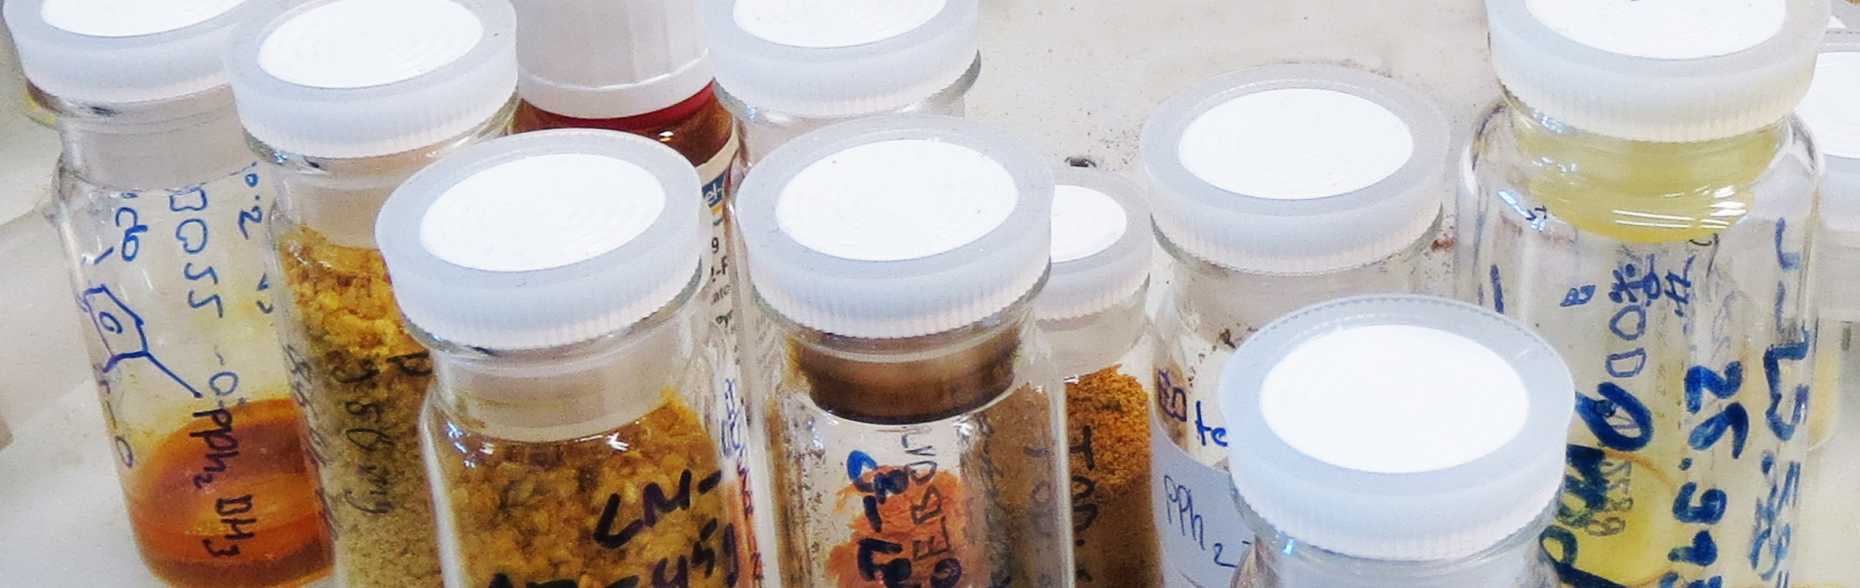 Im Chemielabor: Fläschen mit verschiedenen Substanzen